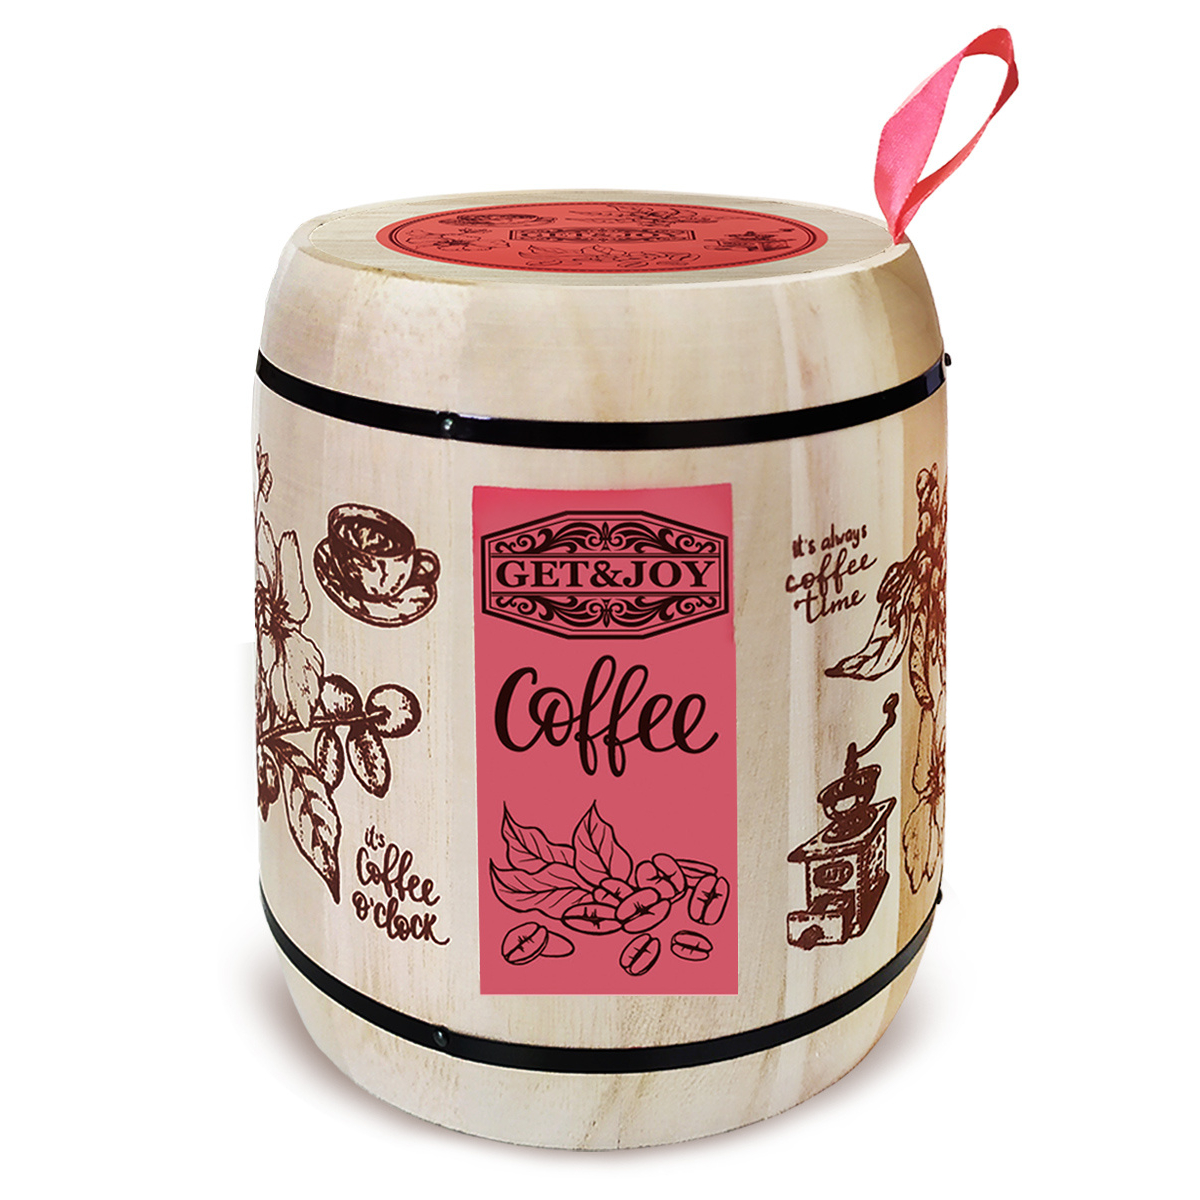 Кофе молотый Get&Joy Ирландский крем, розовый бочонок, 150 г кофе саше ирландский крем свежеобжаренный молотый в фильтр пакете 1уп 8шт по 8гр